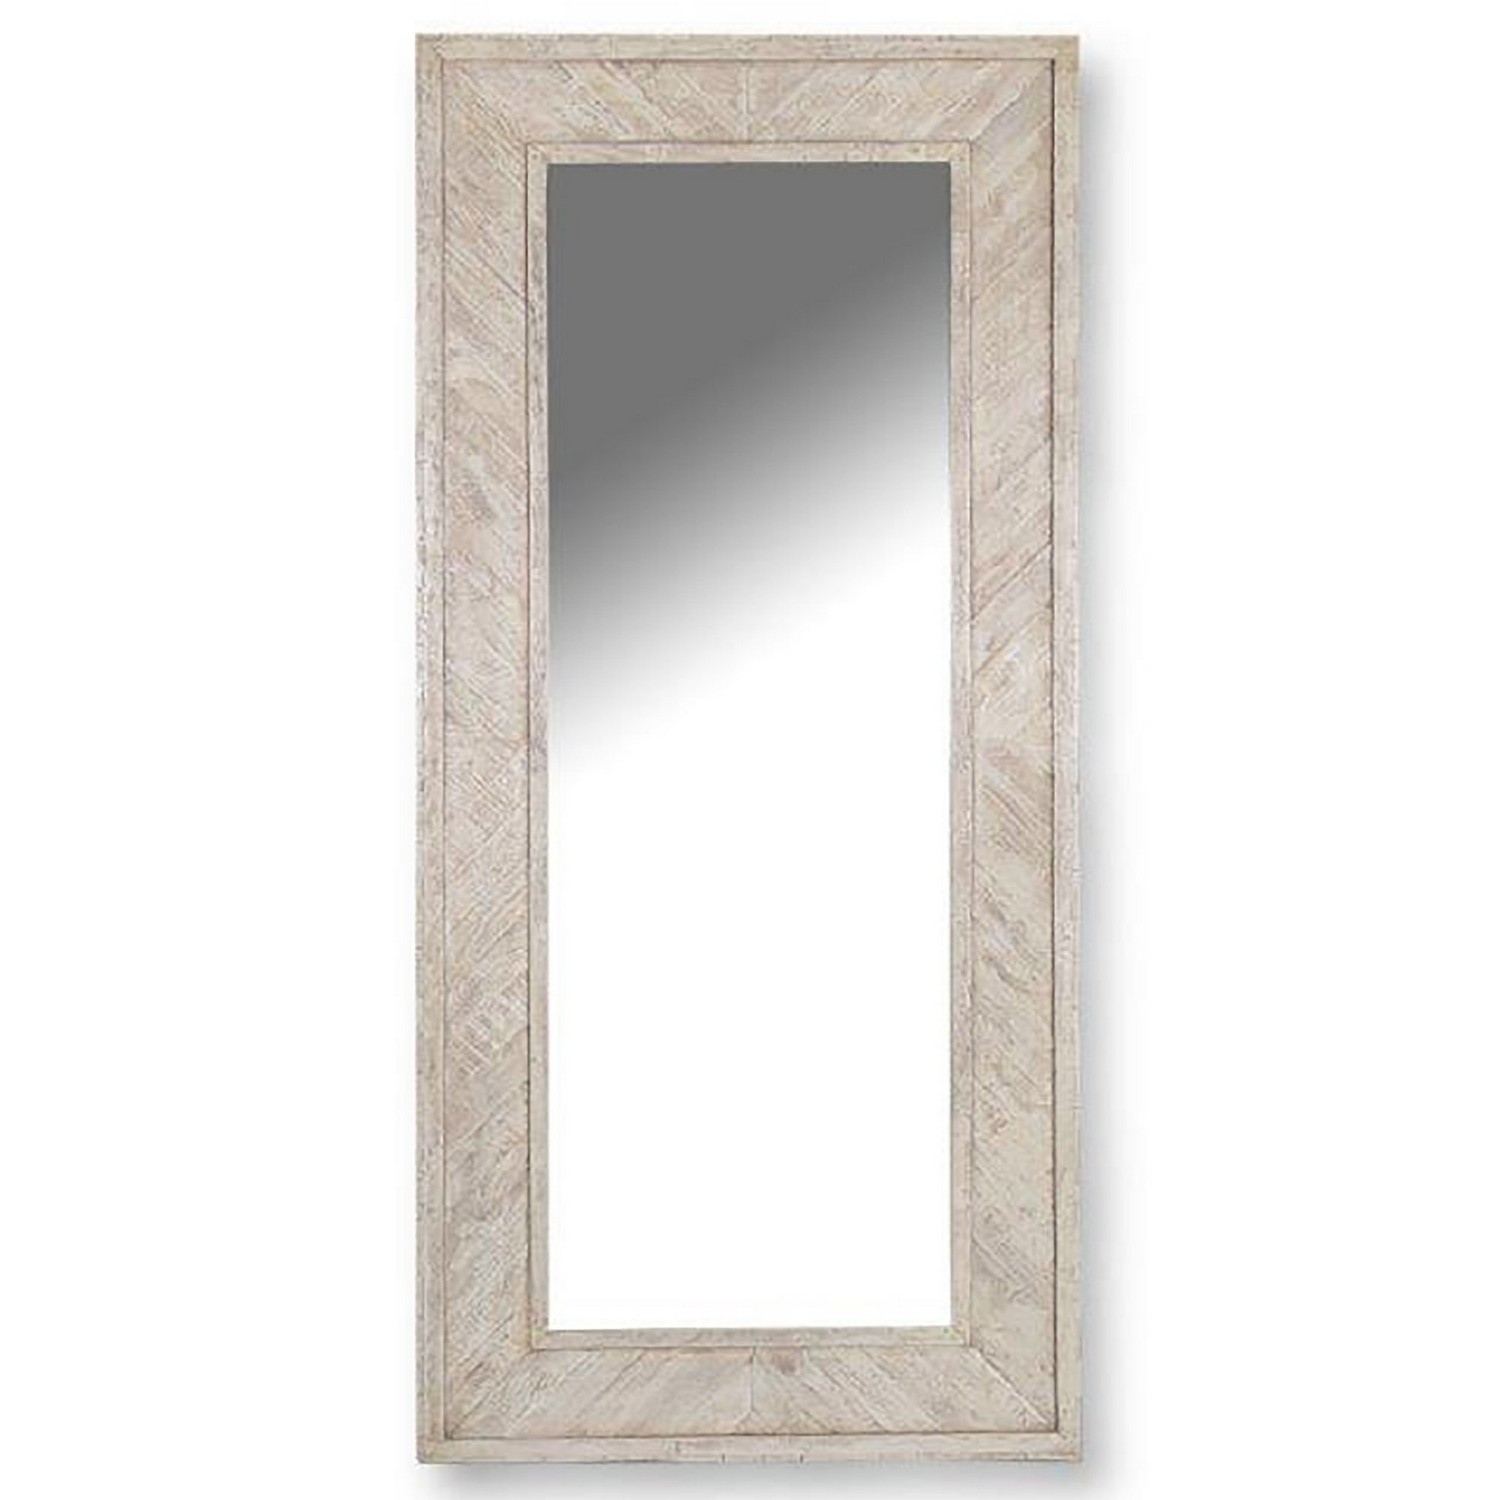 Parker House Crossings Monaco Floor mirror - Weathered Blanc